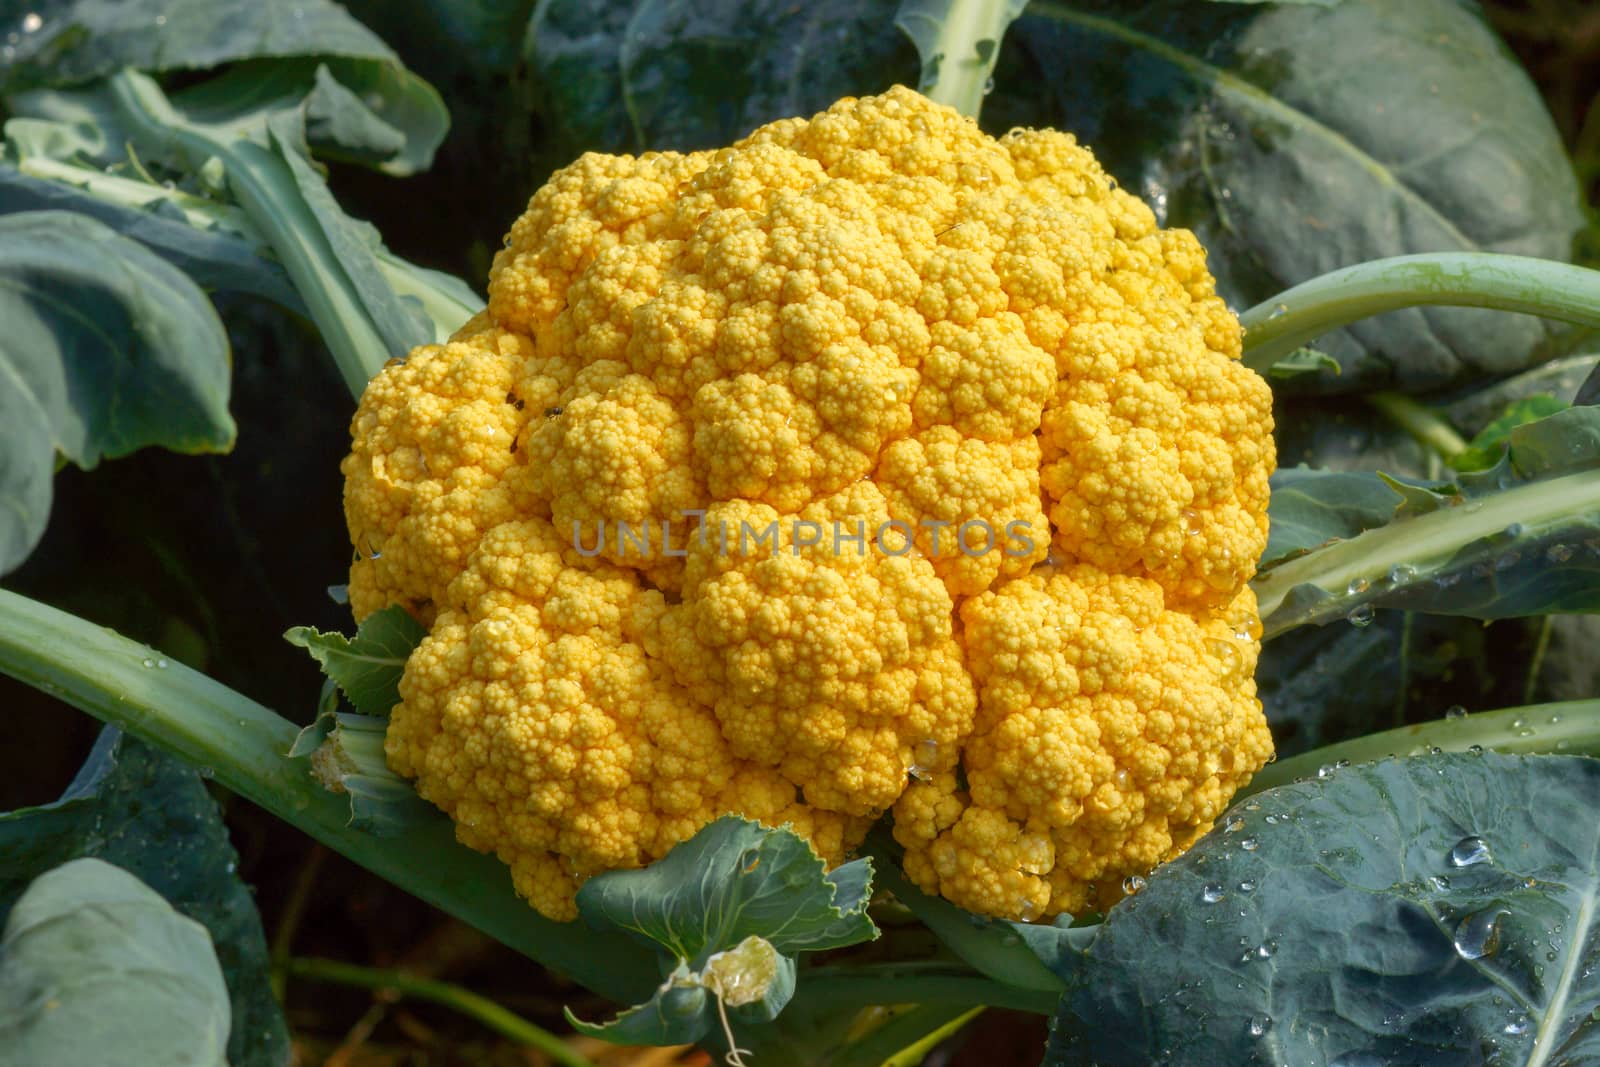 Orange cauliflower